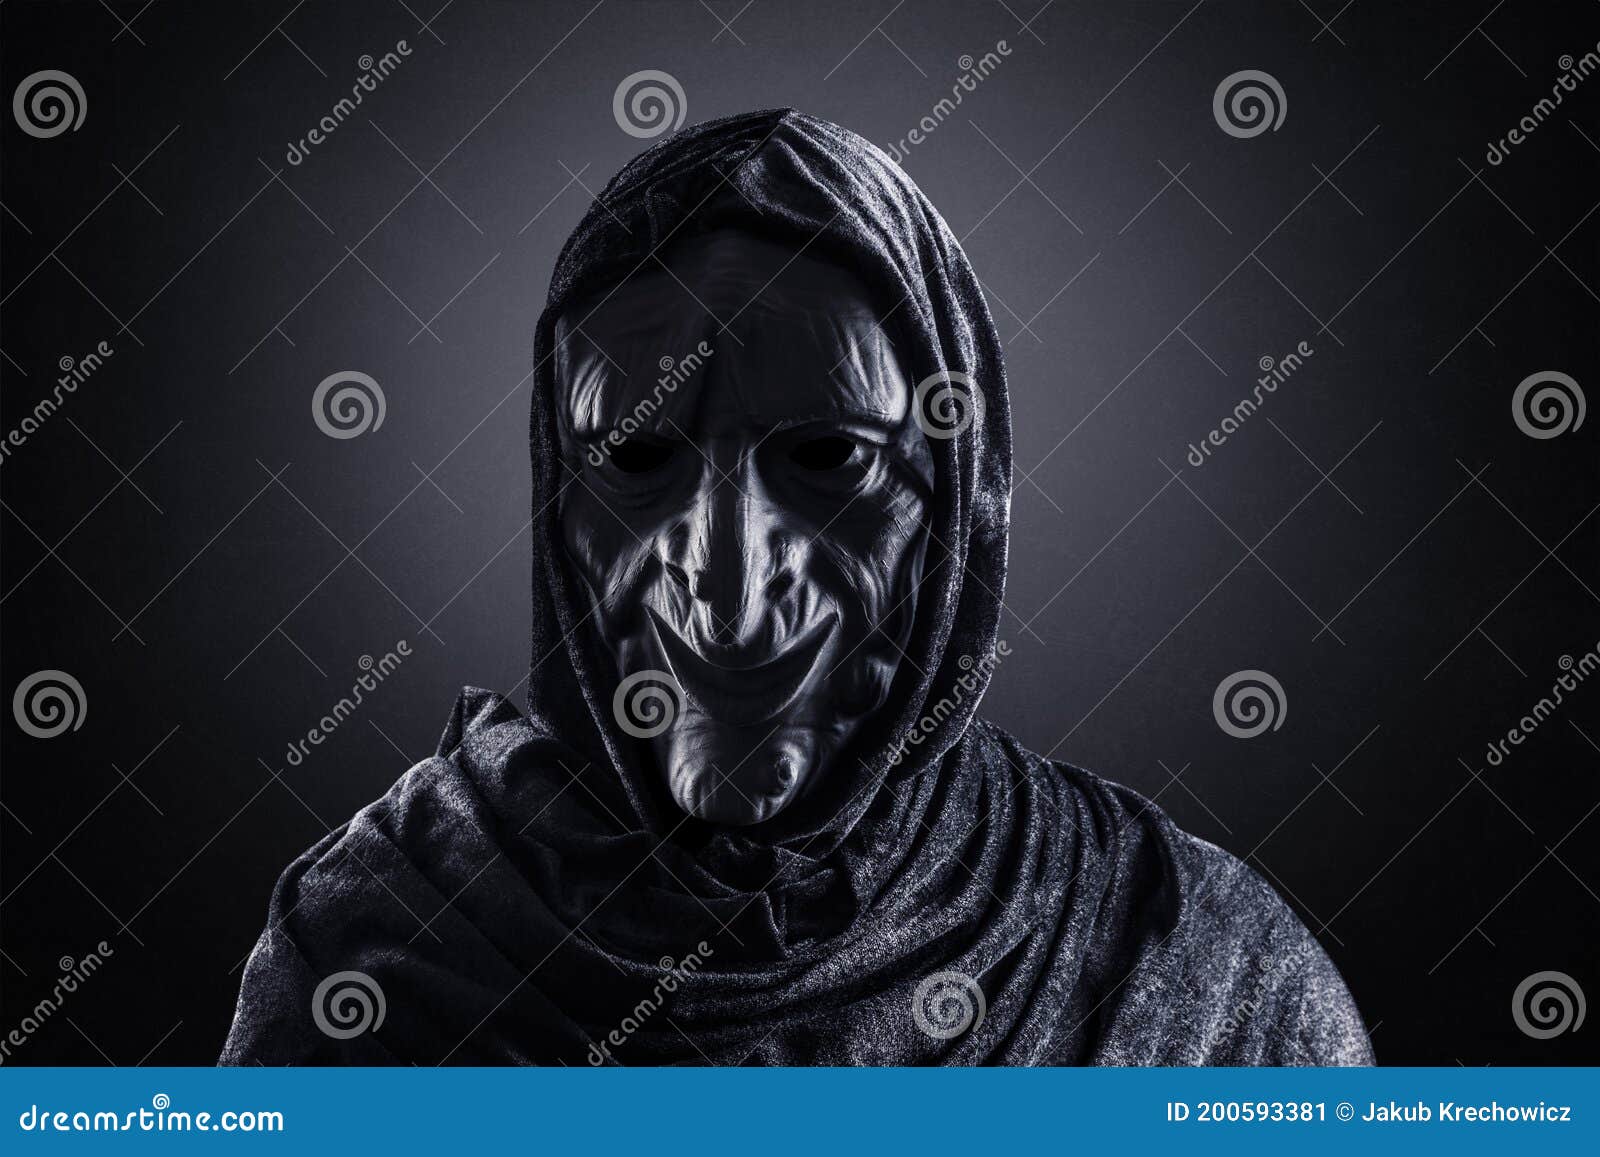 Retrato Bruxa Assustadora Com Espada Vestida Manto Vermelho Contra Fundo  fotos, imagens de © fxquadro #625255858